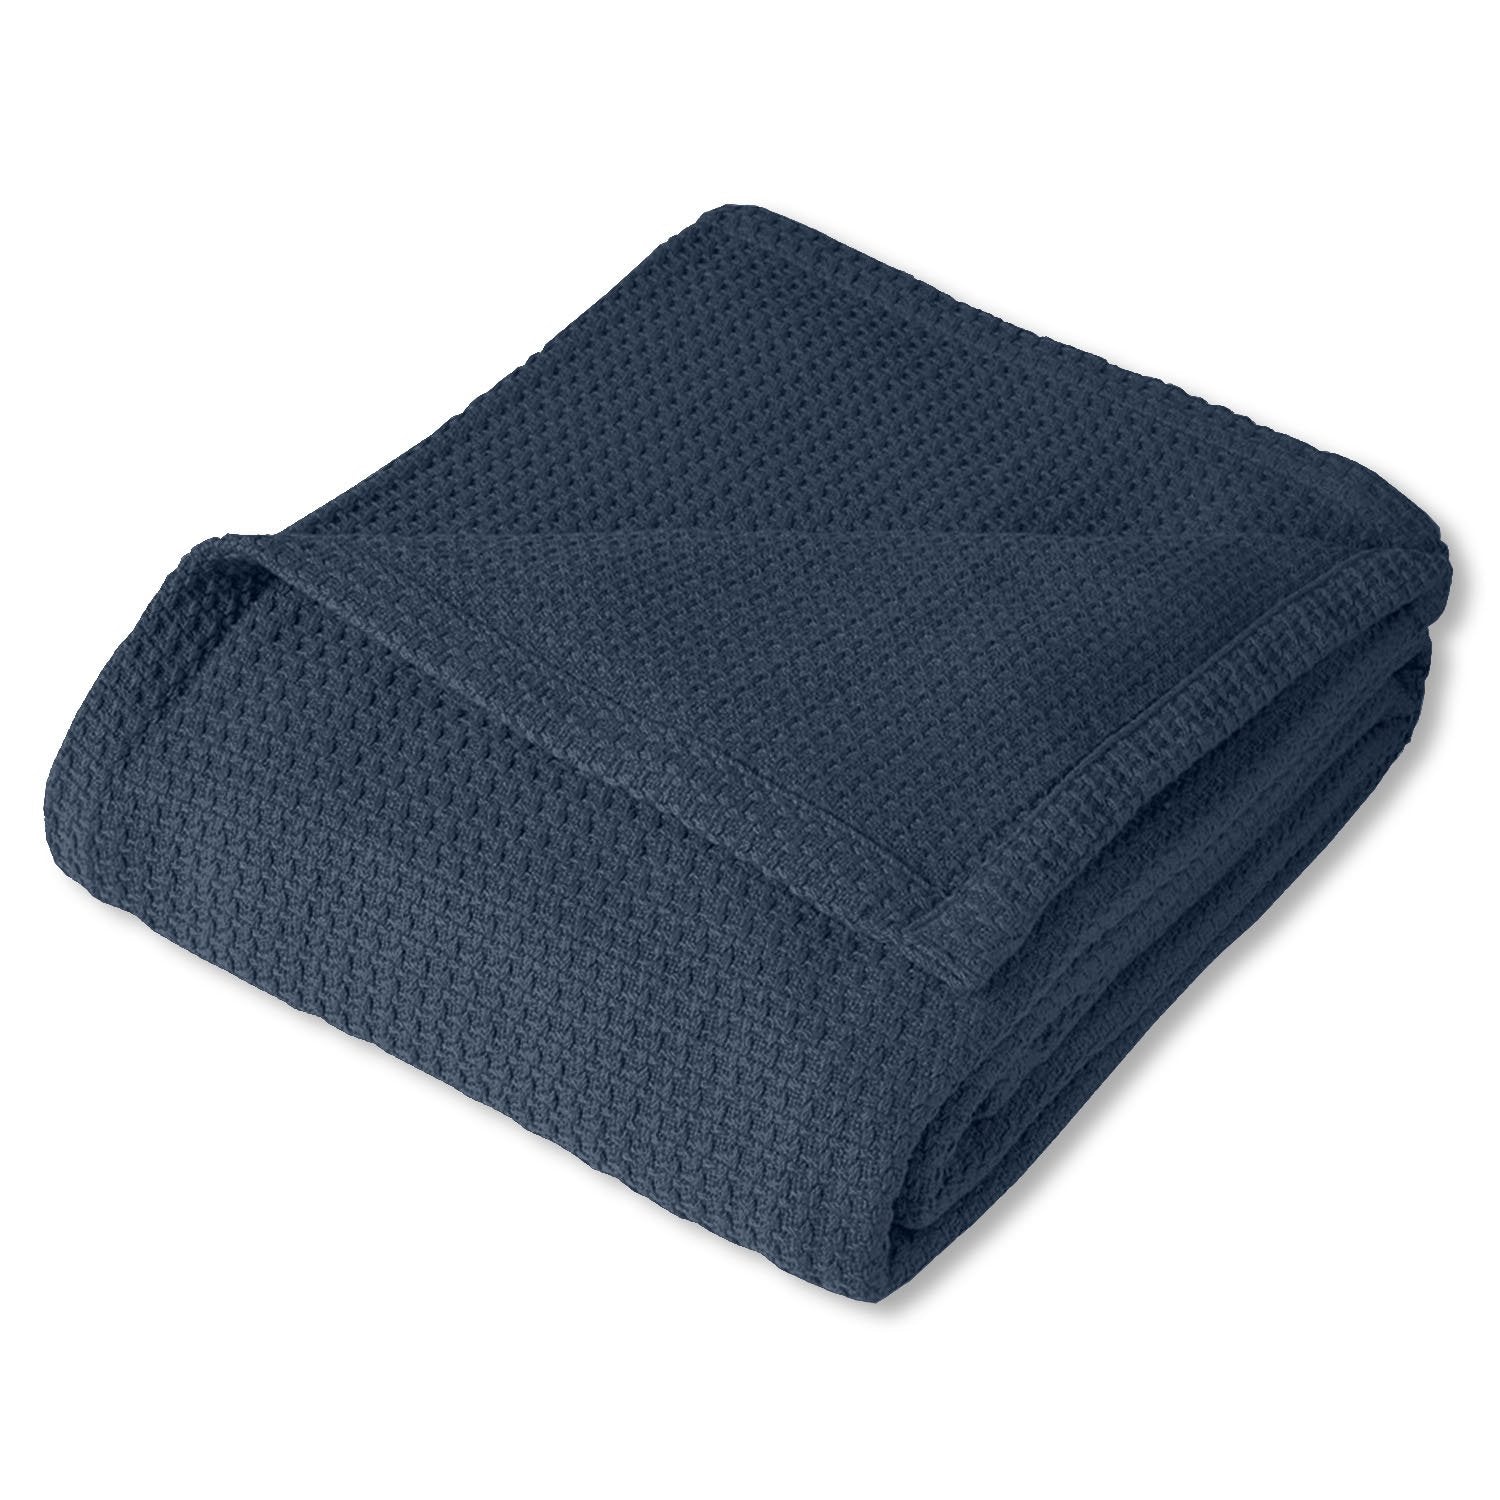 Basket Weave Cotton Blanket Navy - Folded